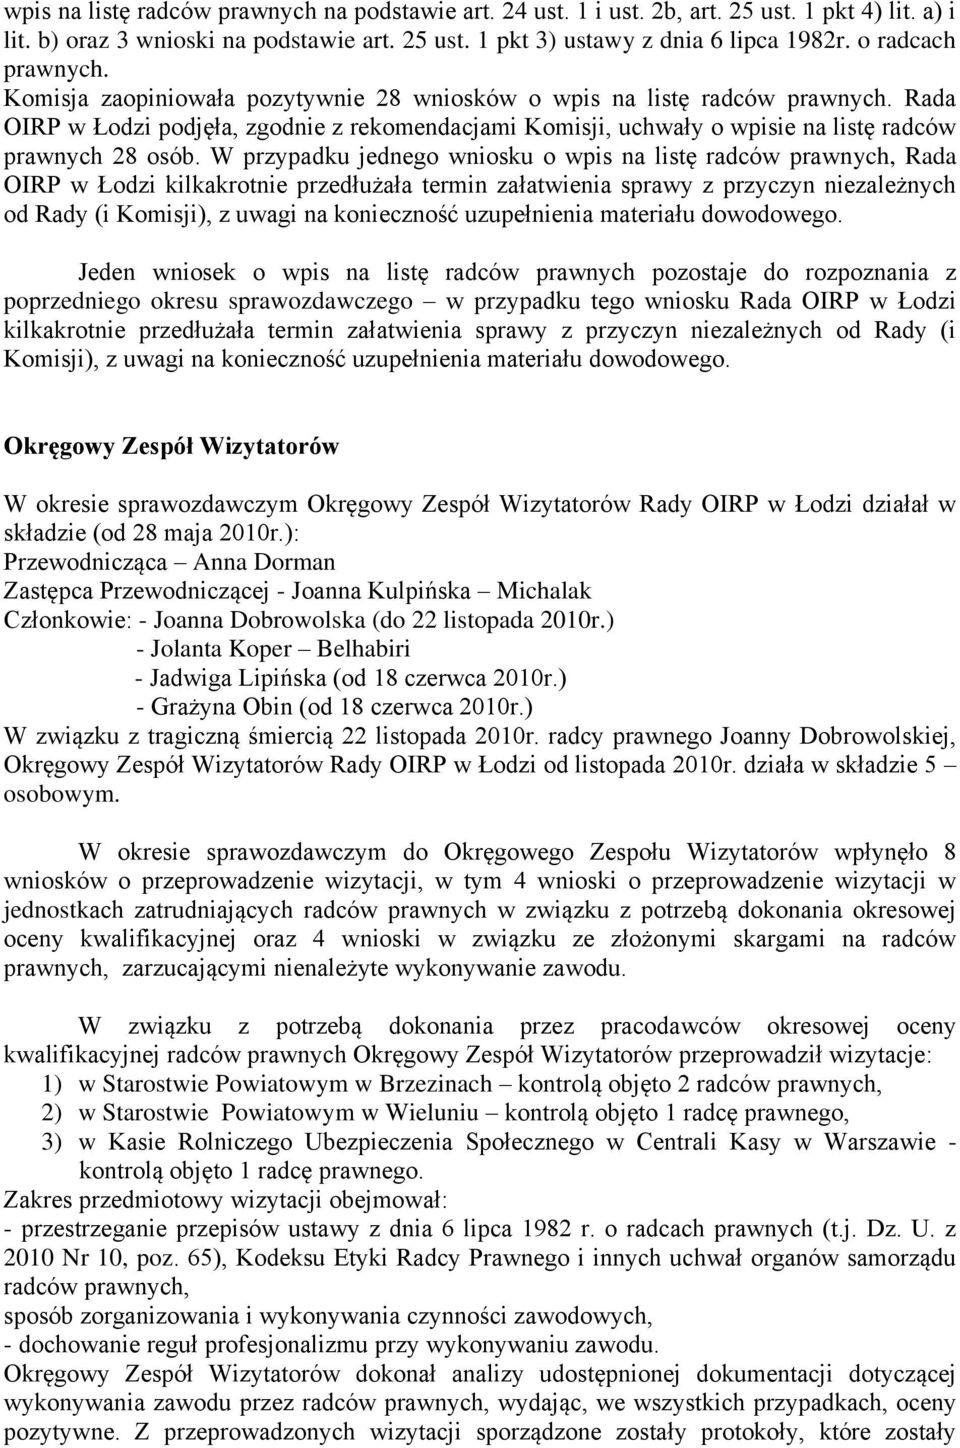 Rada OIRP w Łodzi podjęła, zgodnie z rekomendacjami Komisji, uchwały o wpisie na listę radców prawnych 28 osób.